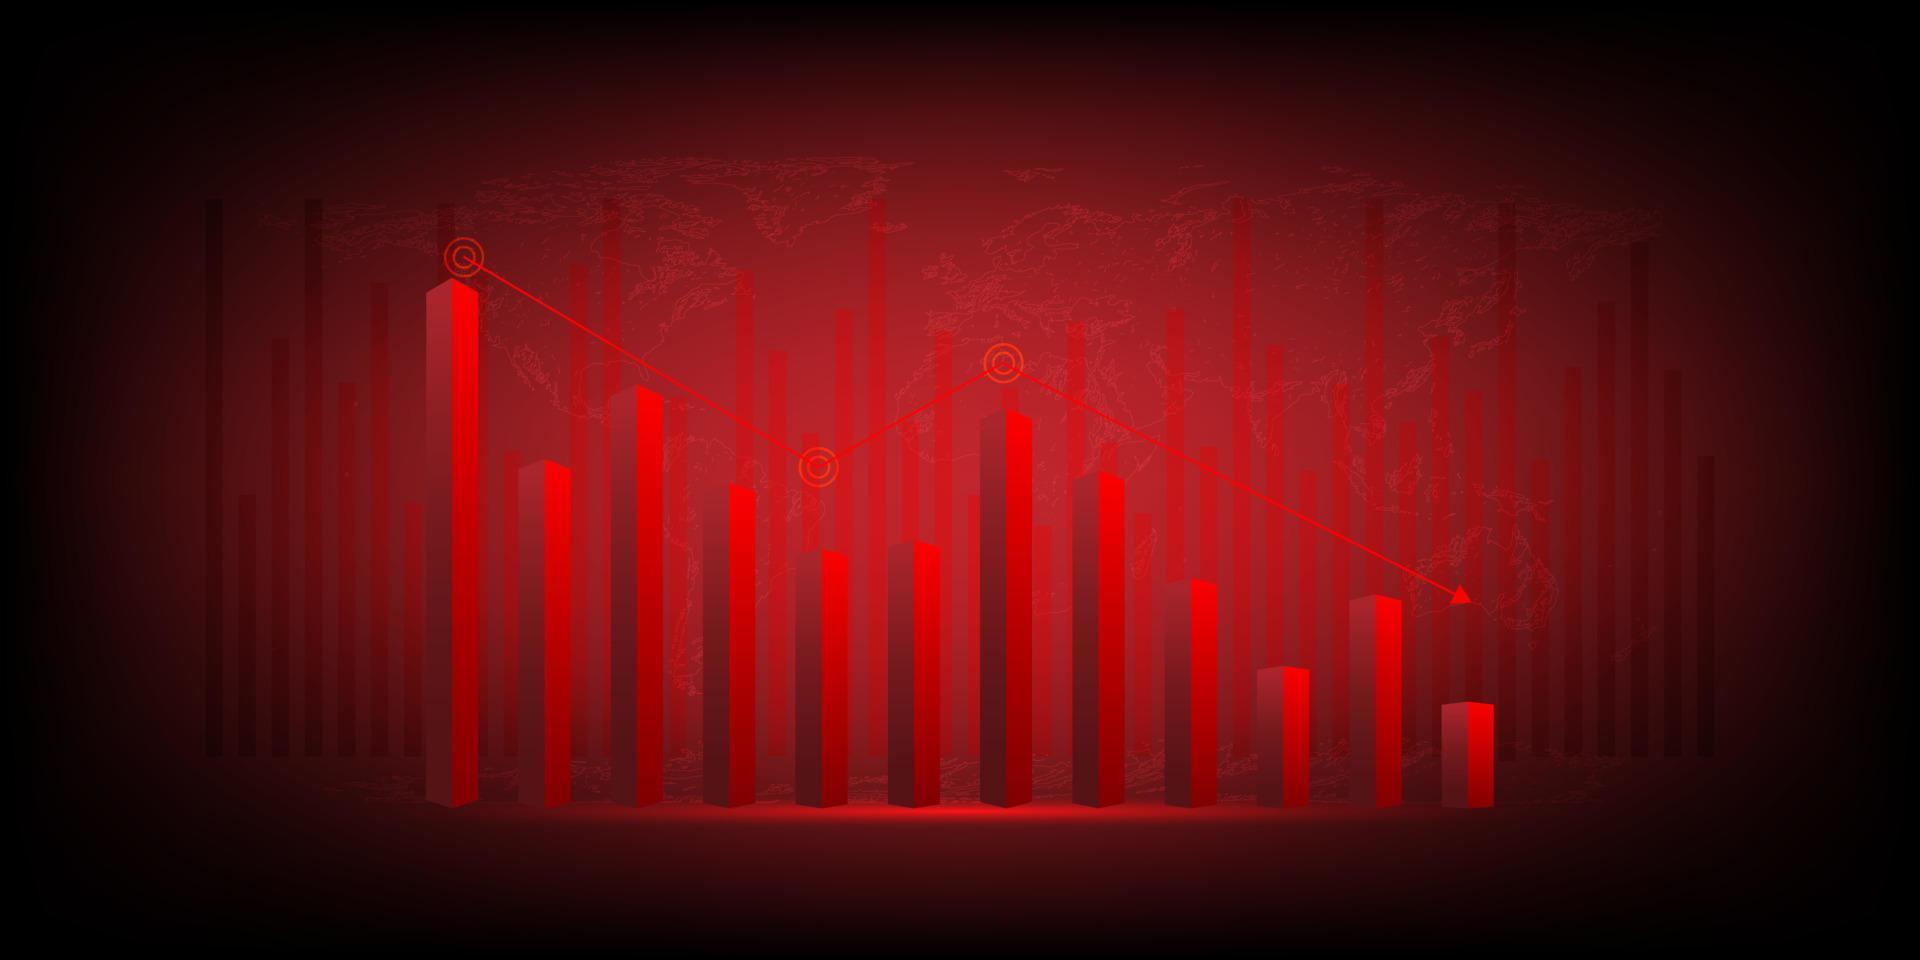 conceito de crise crítica econômica. o gráfico vermelho desce e gráficos em um fundo vermelho. recessão financeira, criptomoeda, ouro e mercado de ações. perder dinheiro e dinheiro. vetor